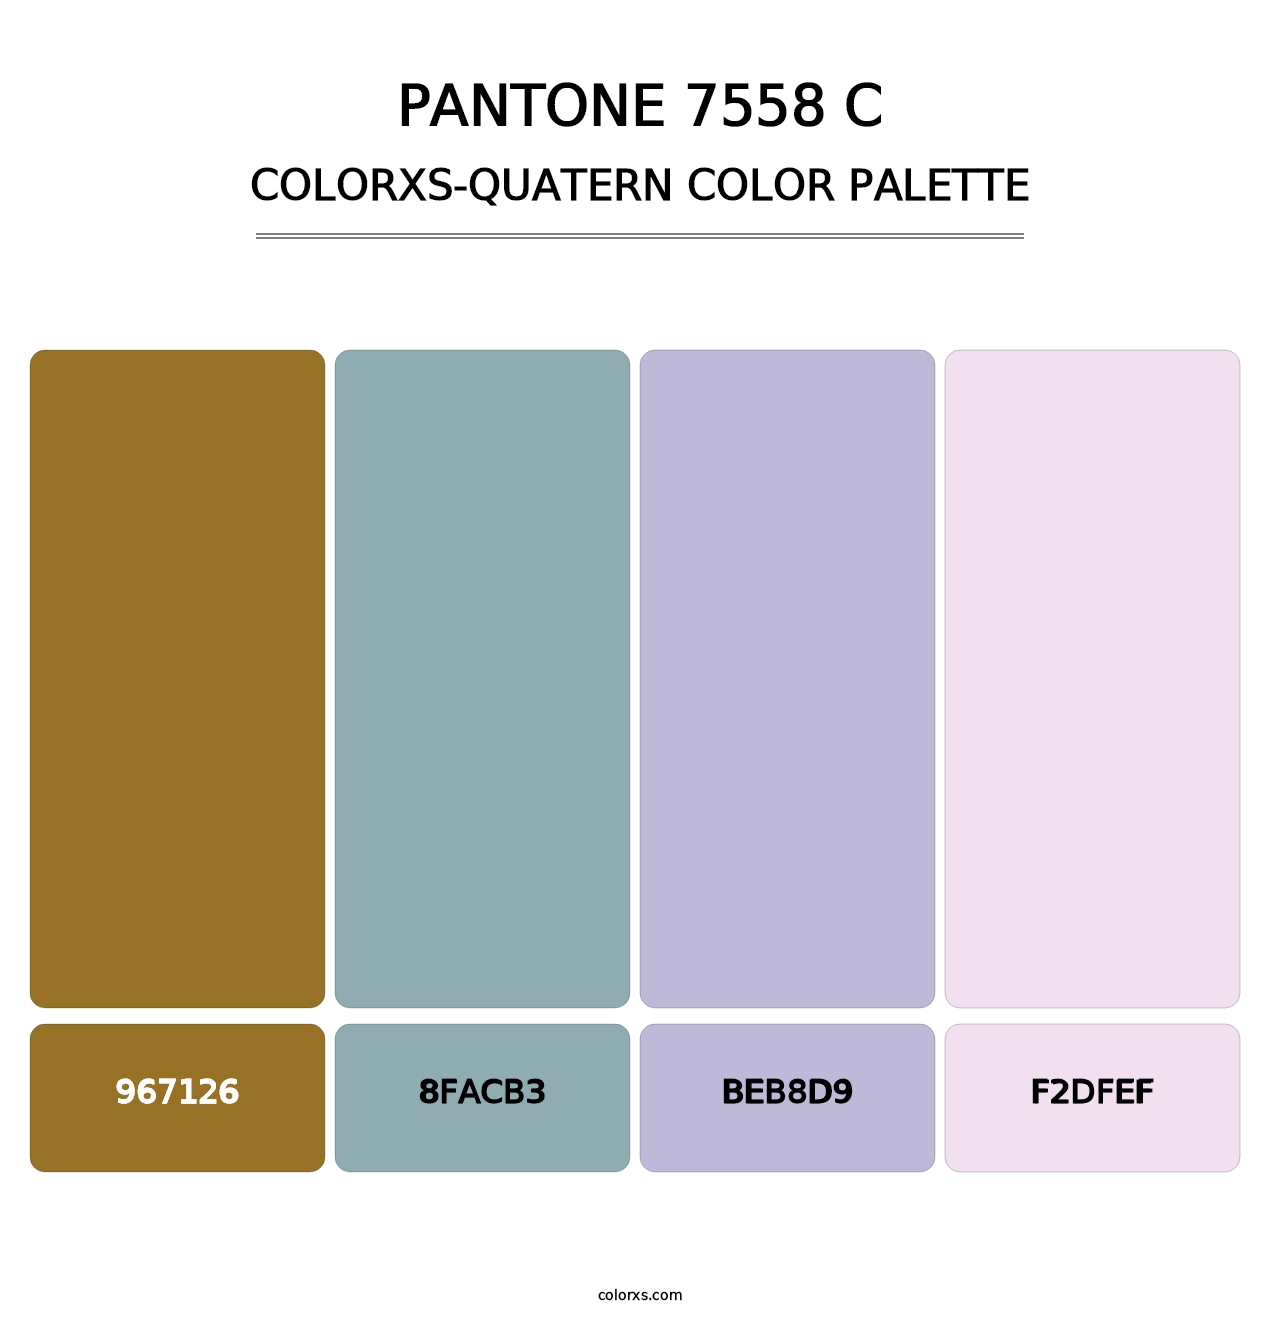 PANTONE 7558 C - Colorxs Quatern Palette